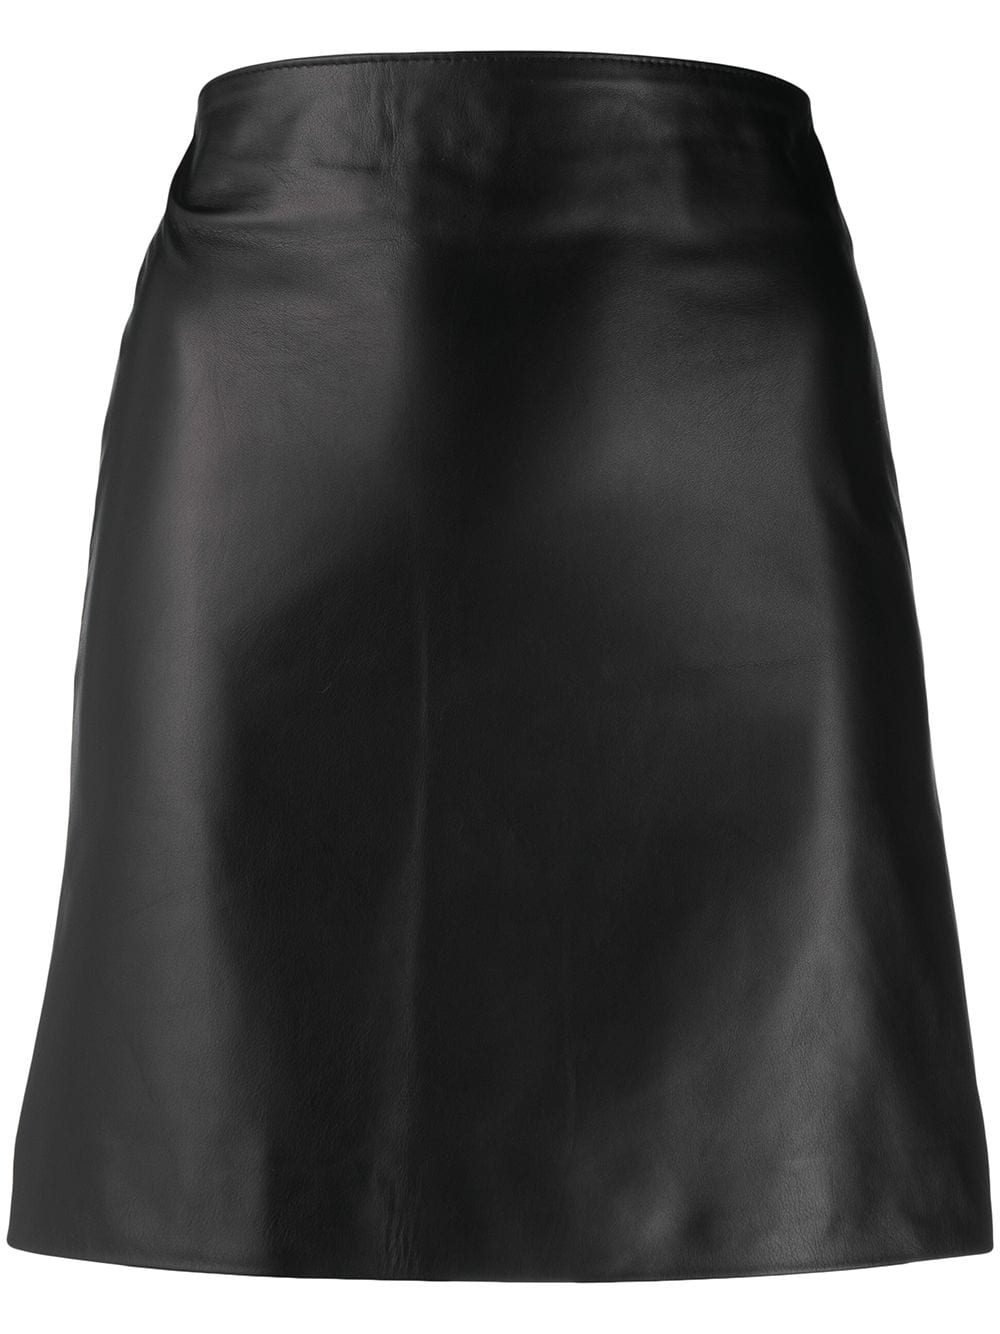 Manokhi polished-finish high-waisted skirt - Black von Manokhi